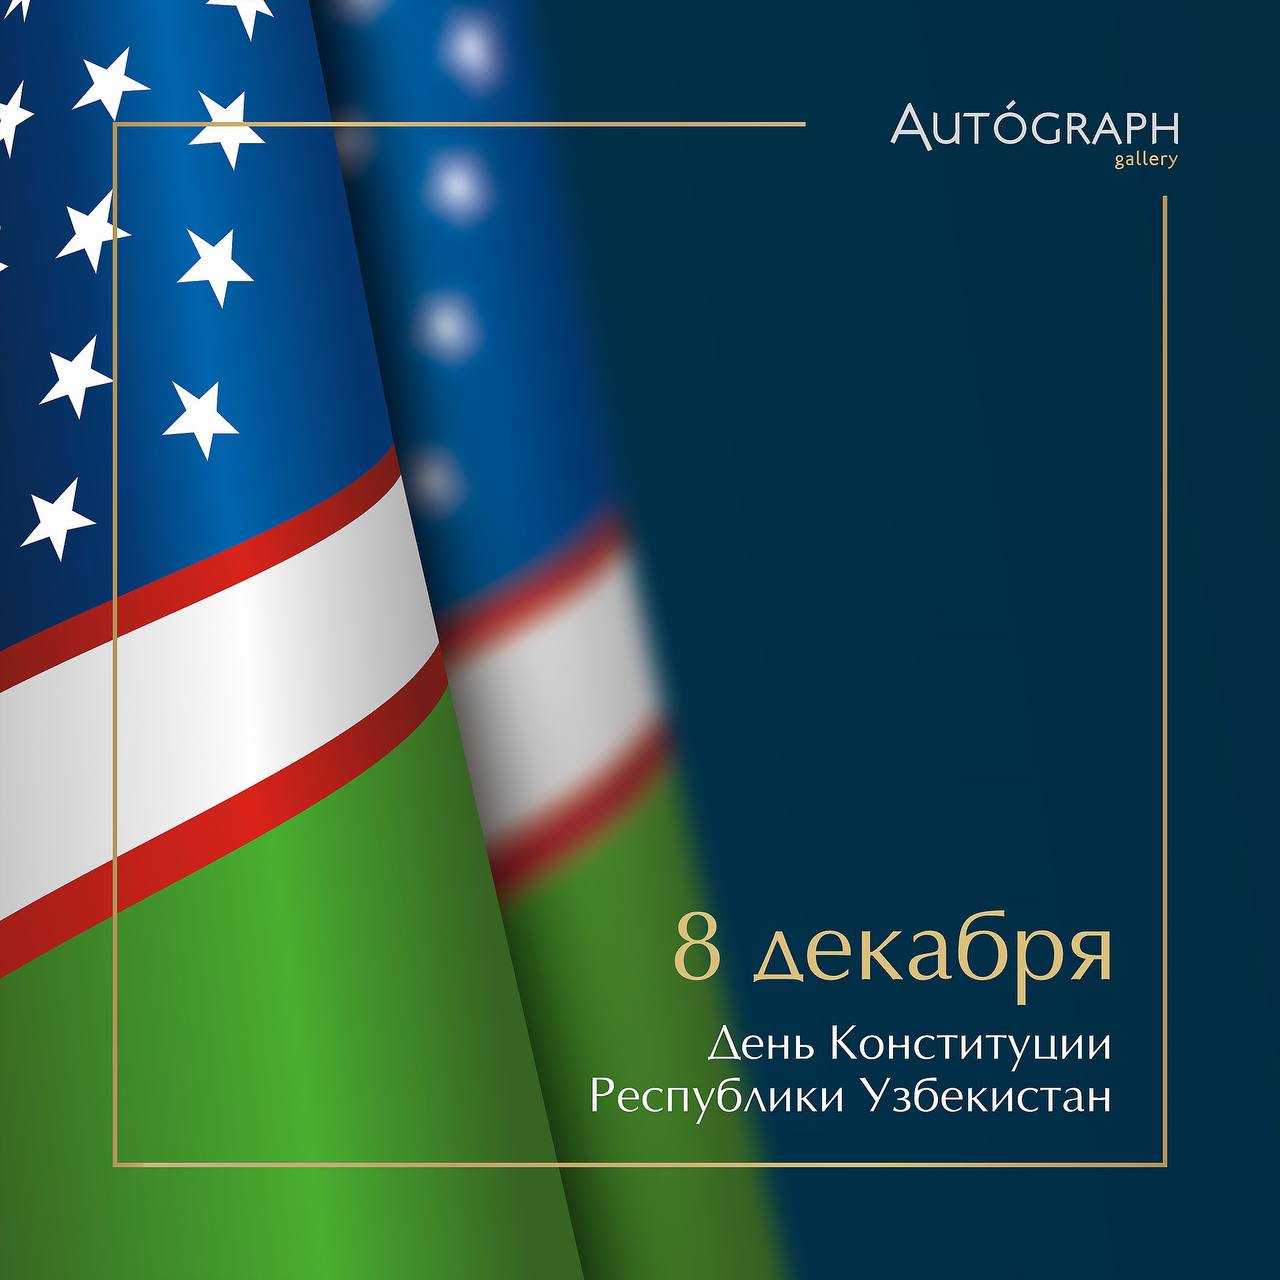 Картинка на день конституции Узбекистана